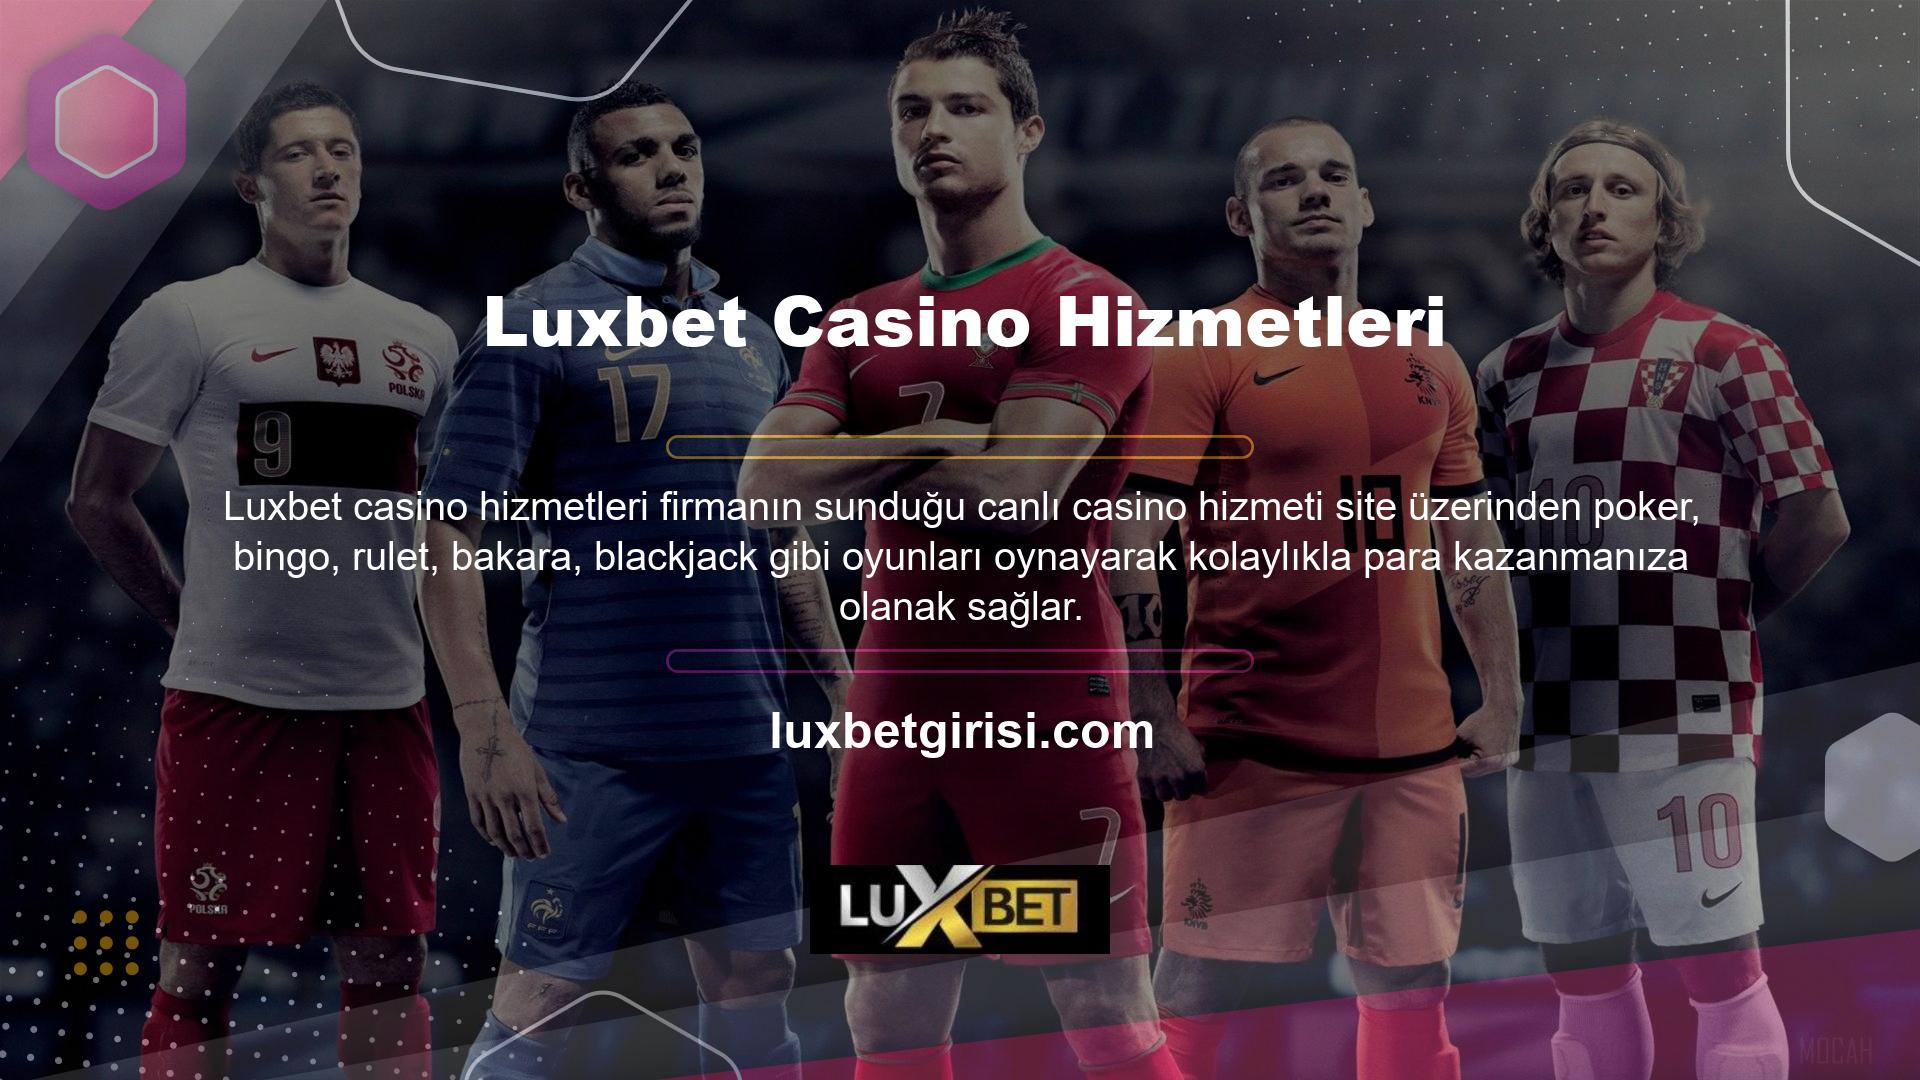 Daha fazla bilgi için lütfen Luxbet giriş sayfasına bakın